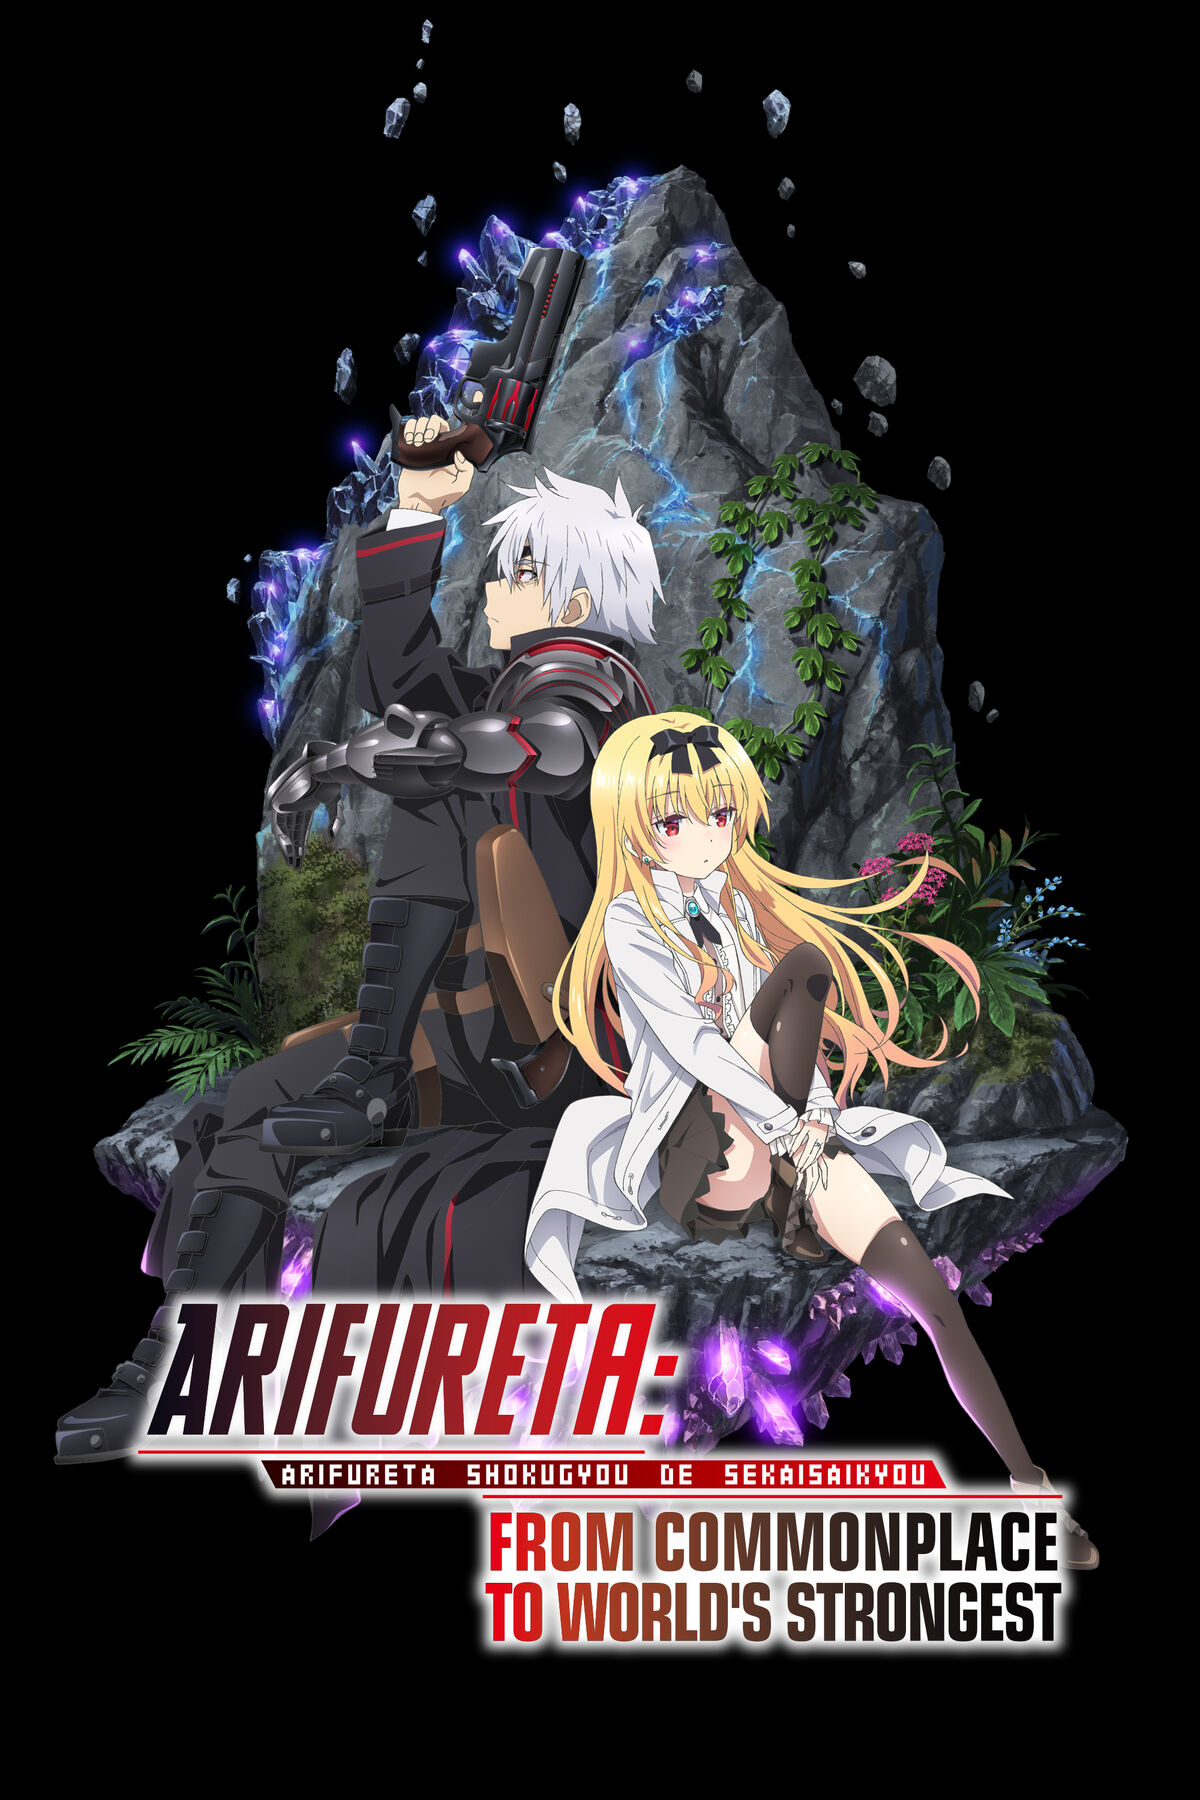 Anime Dublado on X: 🌟 NOVO EPISÓDIO DUBLADO DISPONÍVEL 🌟 Arifureta - 2ª  Temporada #9 Assista na Funimation!  / X